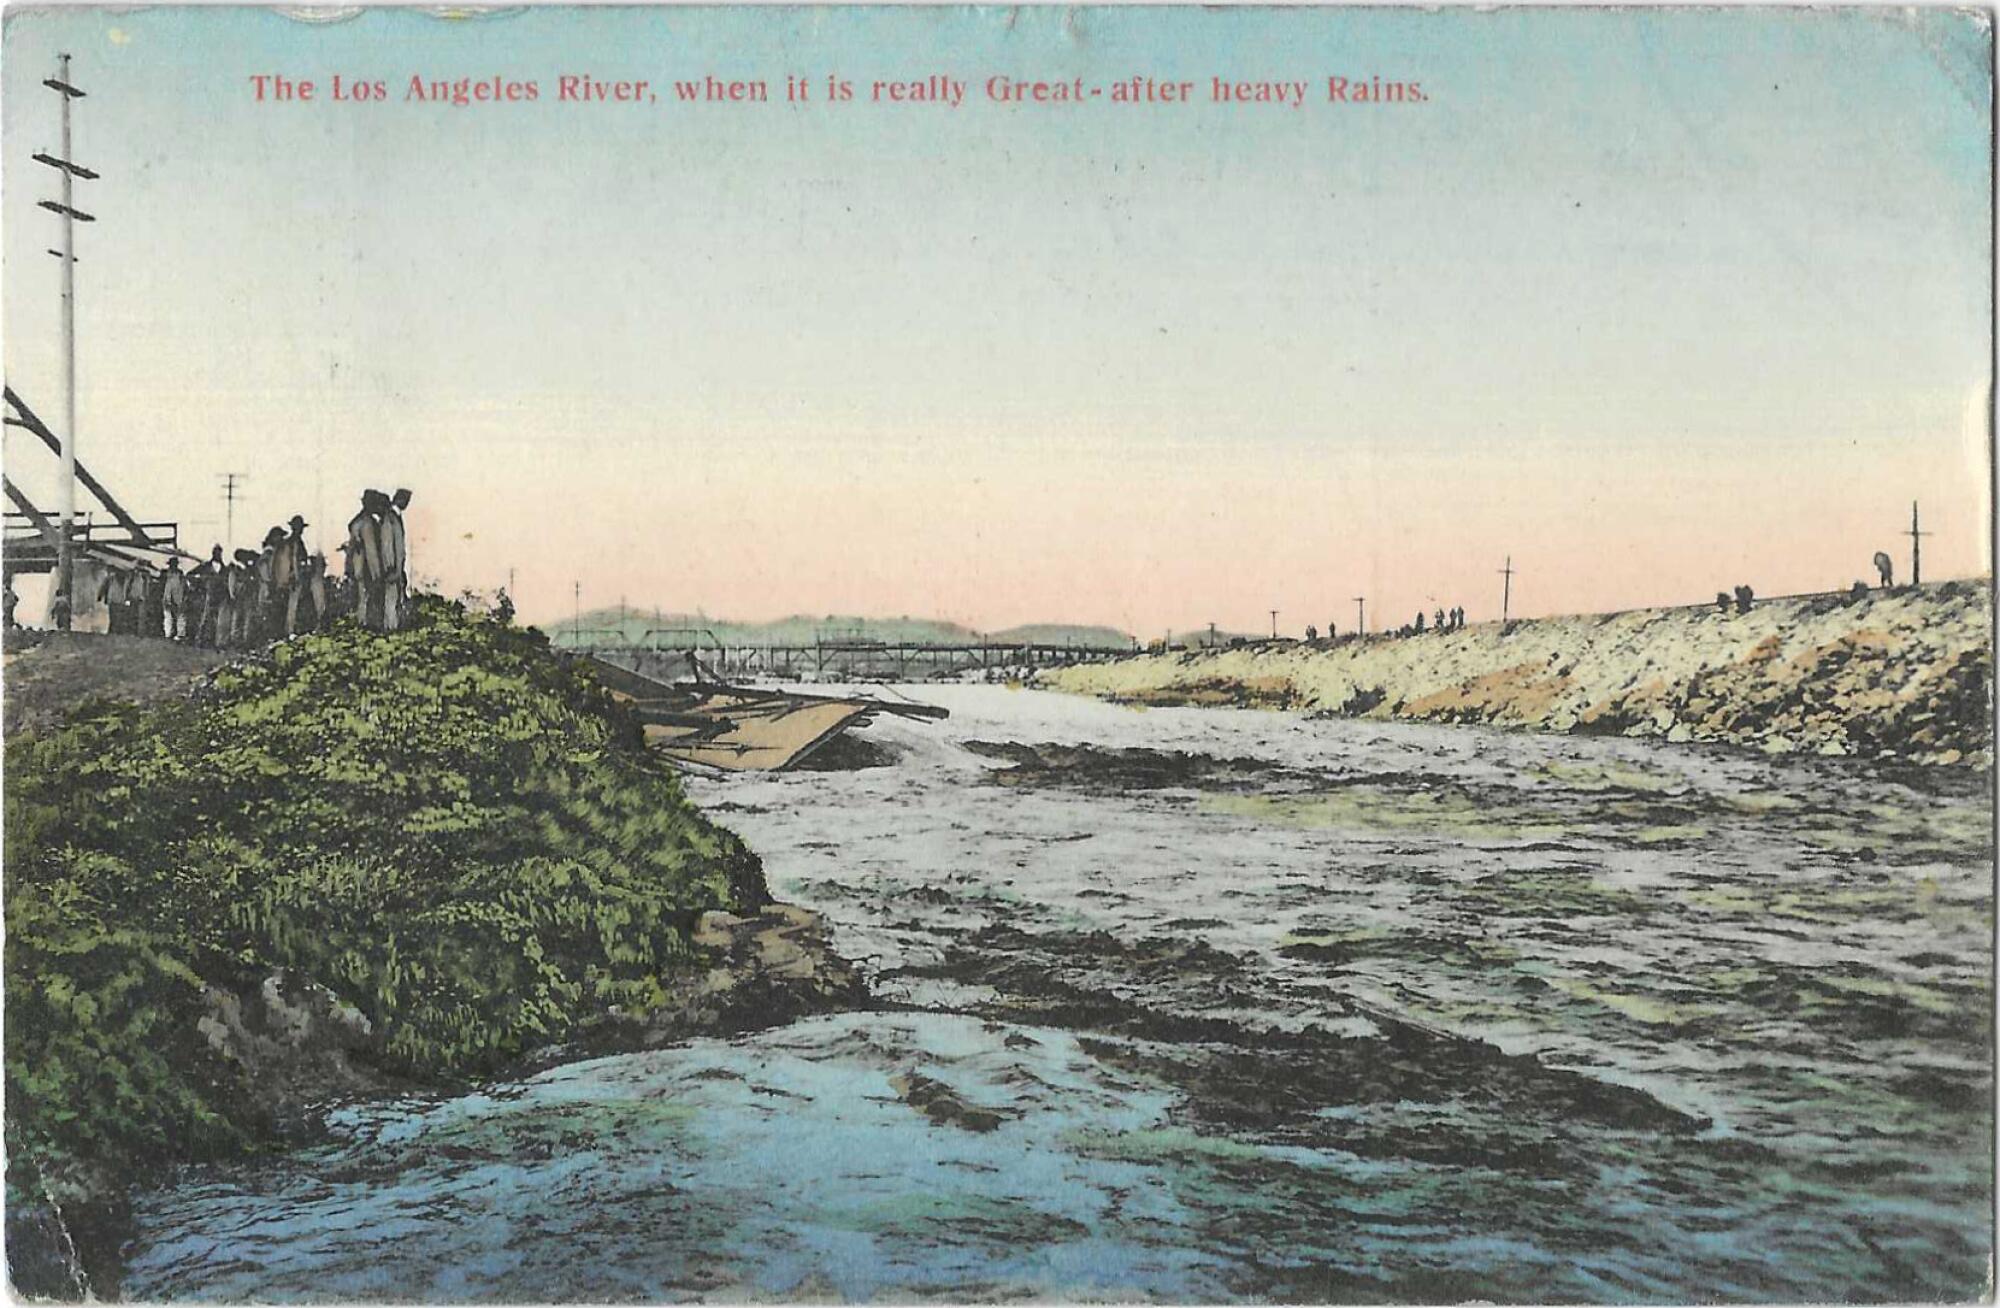 洛杉矶河流域的水流汹涌澎湃，背景是一座桥梁，两岸都是人们。